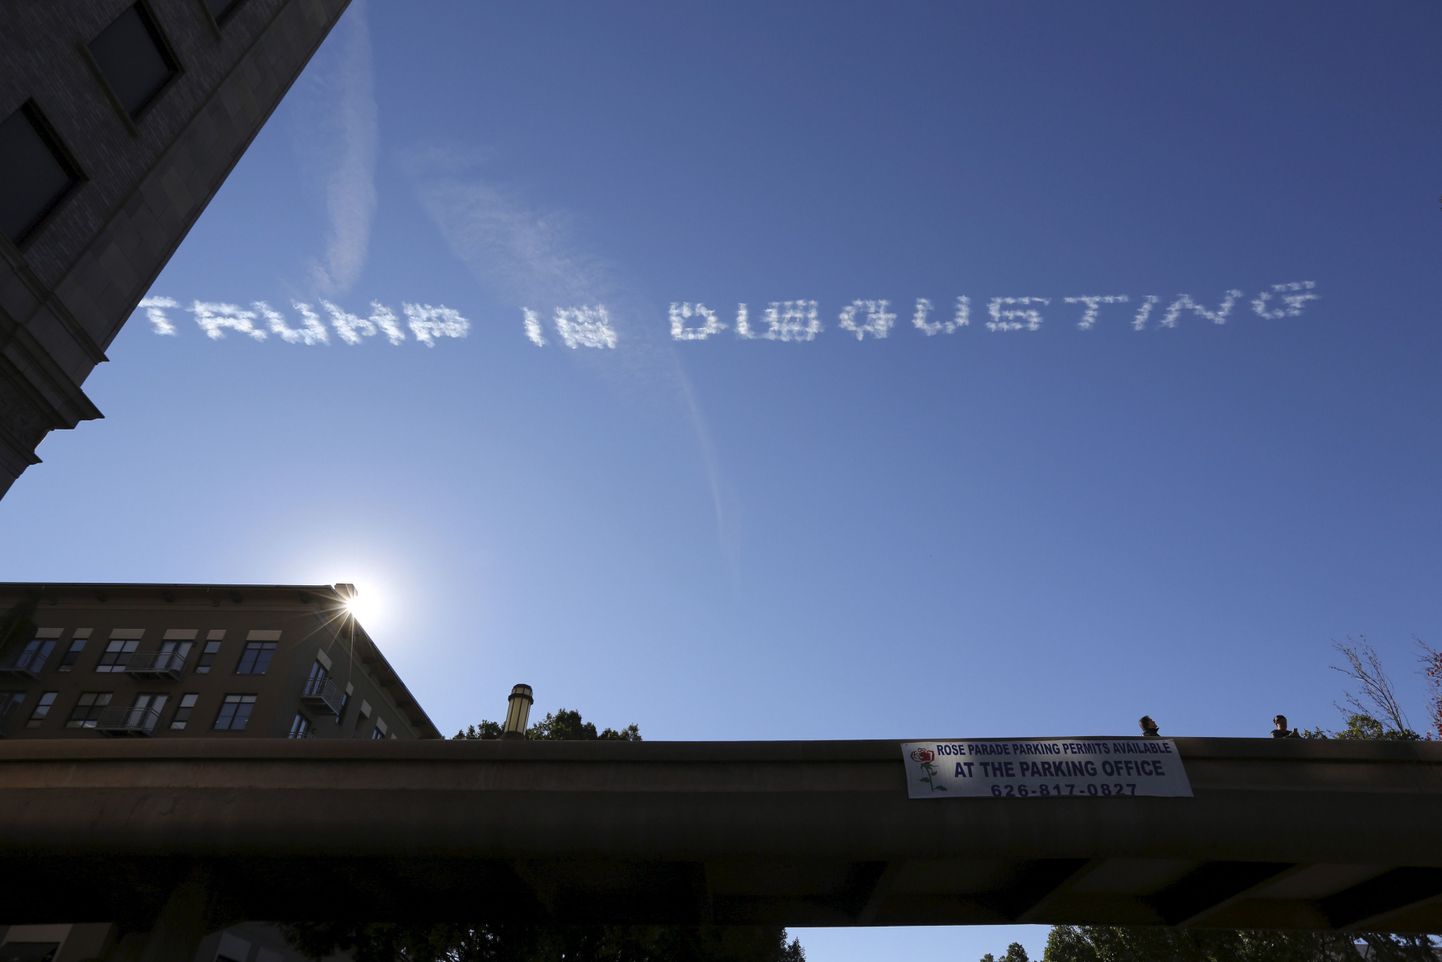 Надпись в небе Калифорнии: "Трамп отвратителен".